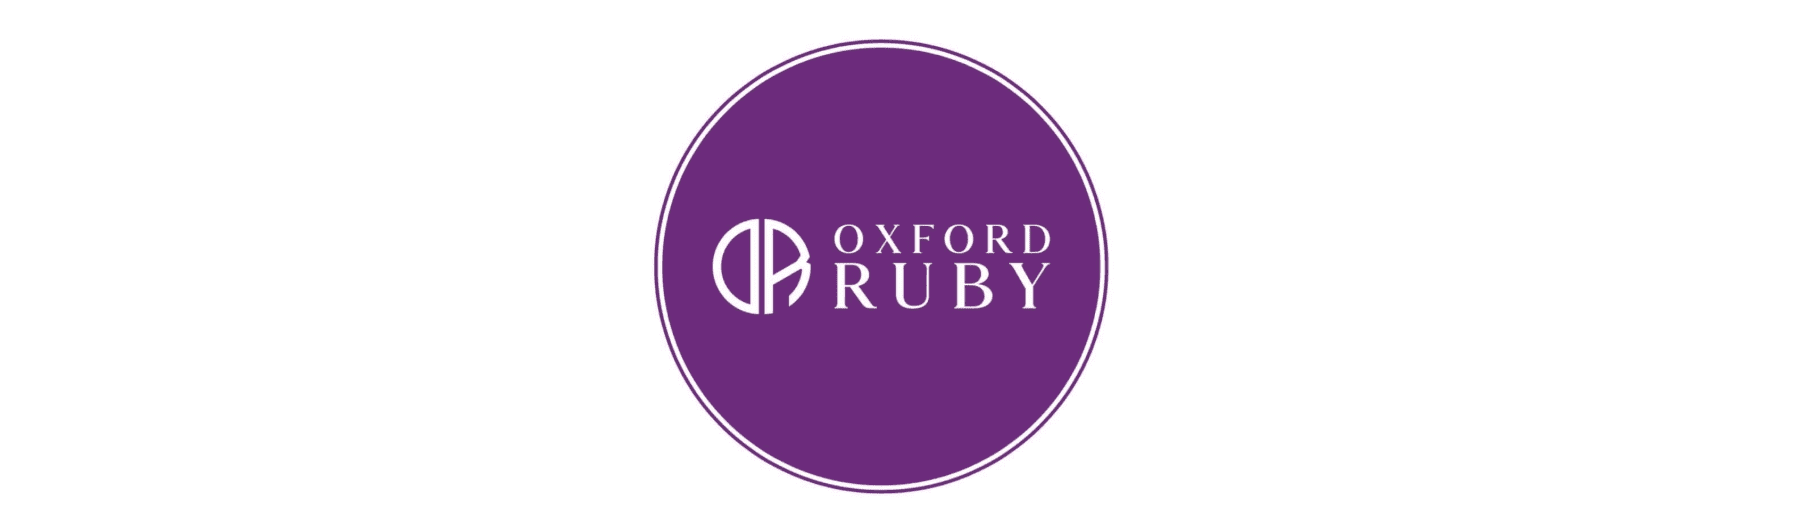 OXFORD RUBY